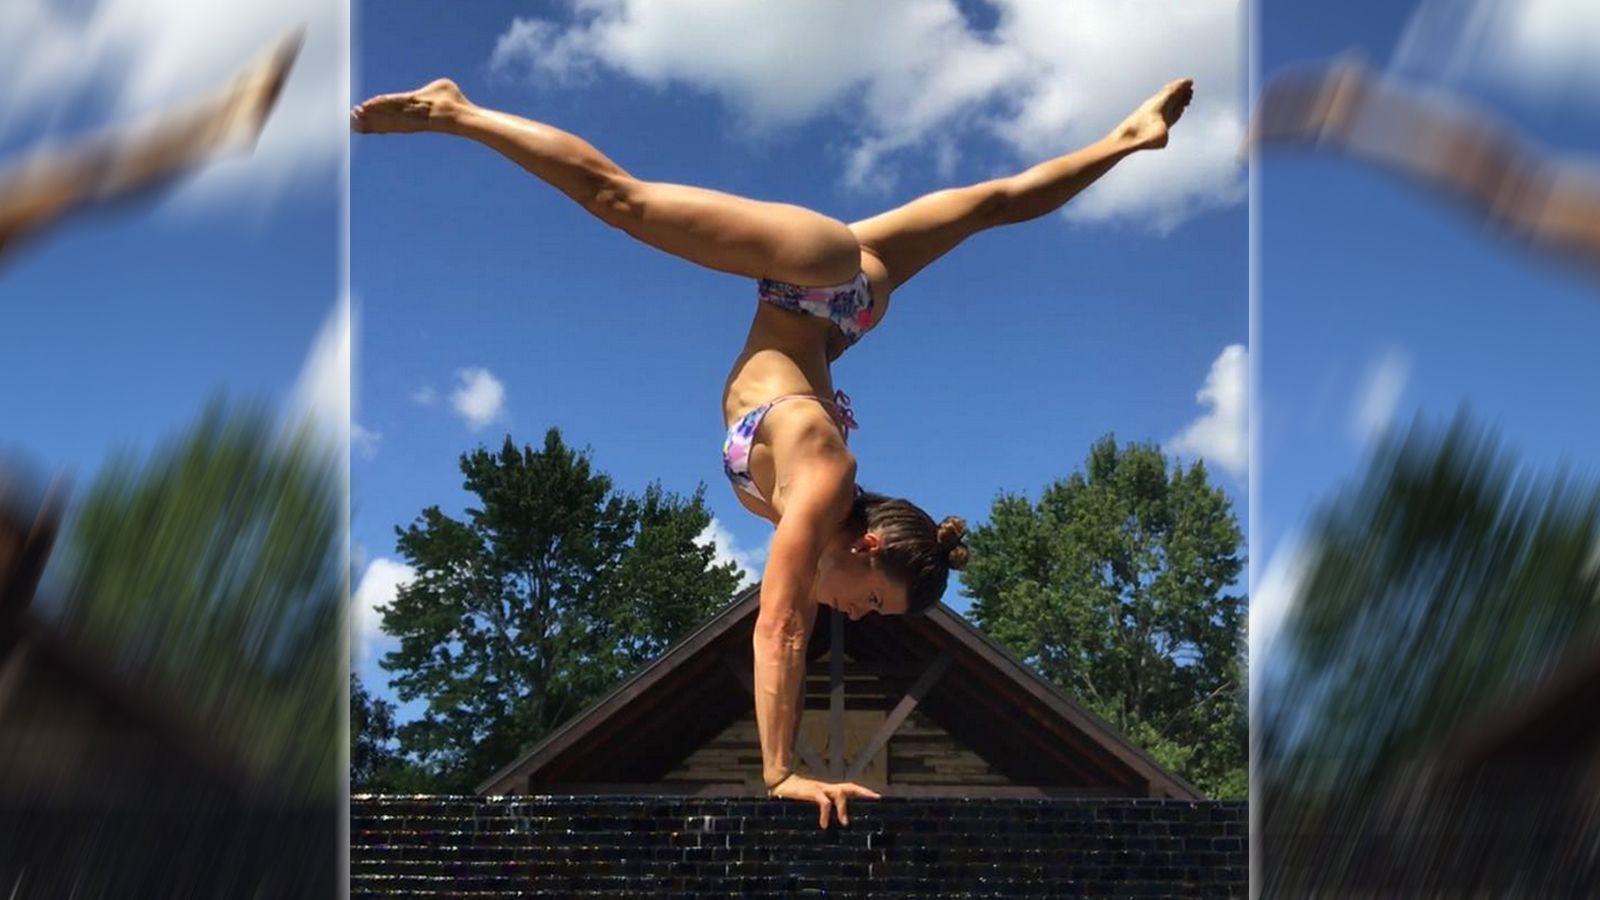 
                <strong>Danica Patrick: Die schnellste Frau der Welt hört auf</strong><br>
                Oder beim Yoga Workout. Unter anderem eine Art, nach dem Ende ihrer Motorsport-Karriere in Zukunft die Menschen zu inspirieren.
              